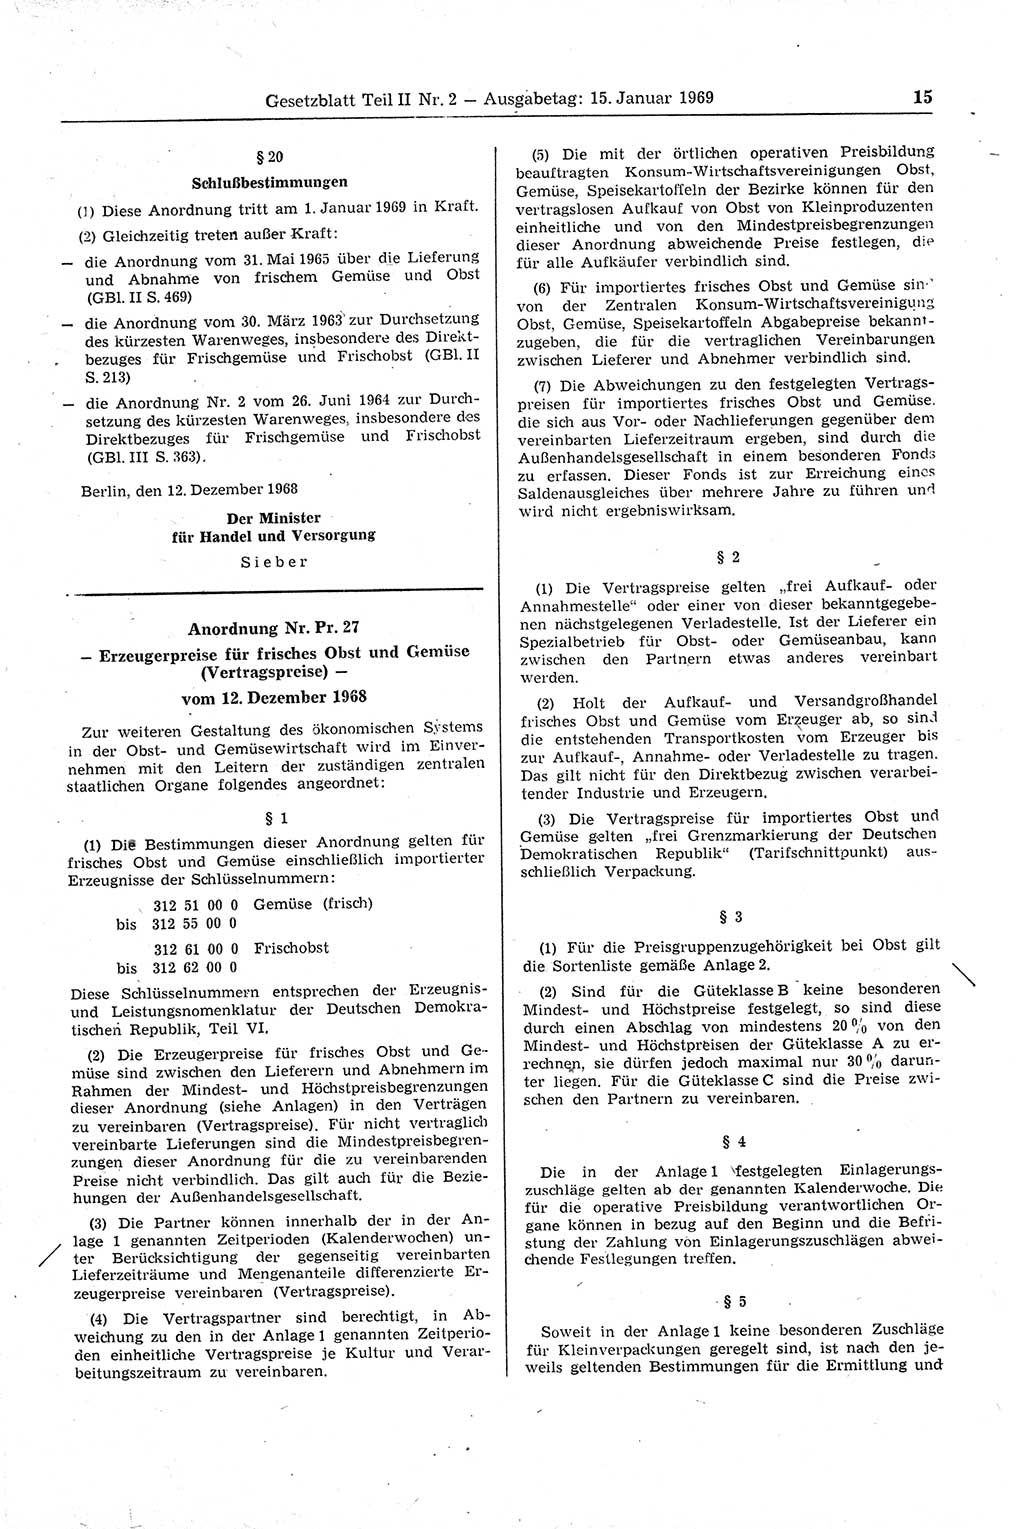 Gesetzblatt (GBl.) der Deutschen Demokratischen Republik (DDR) Teil ⅠⅠ 1969, Seite 15 (GBl. DDR ⅠⅠ 1969, S. 15)